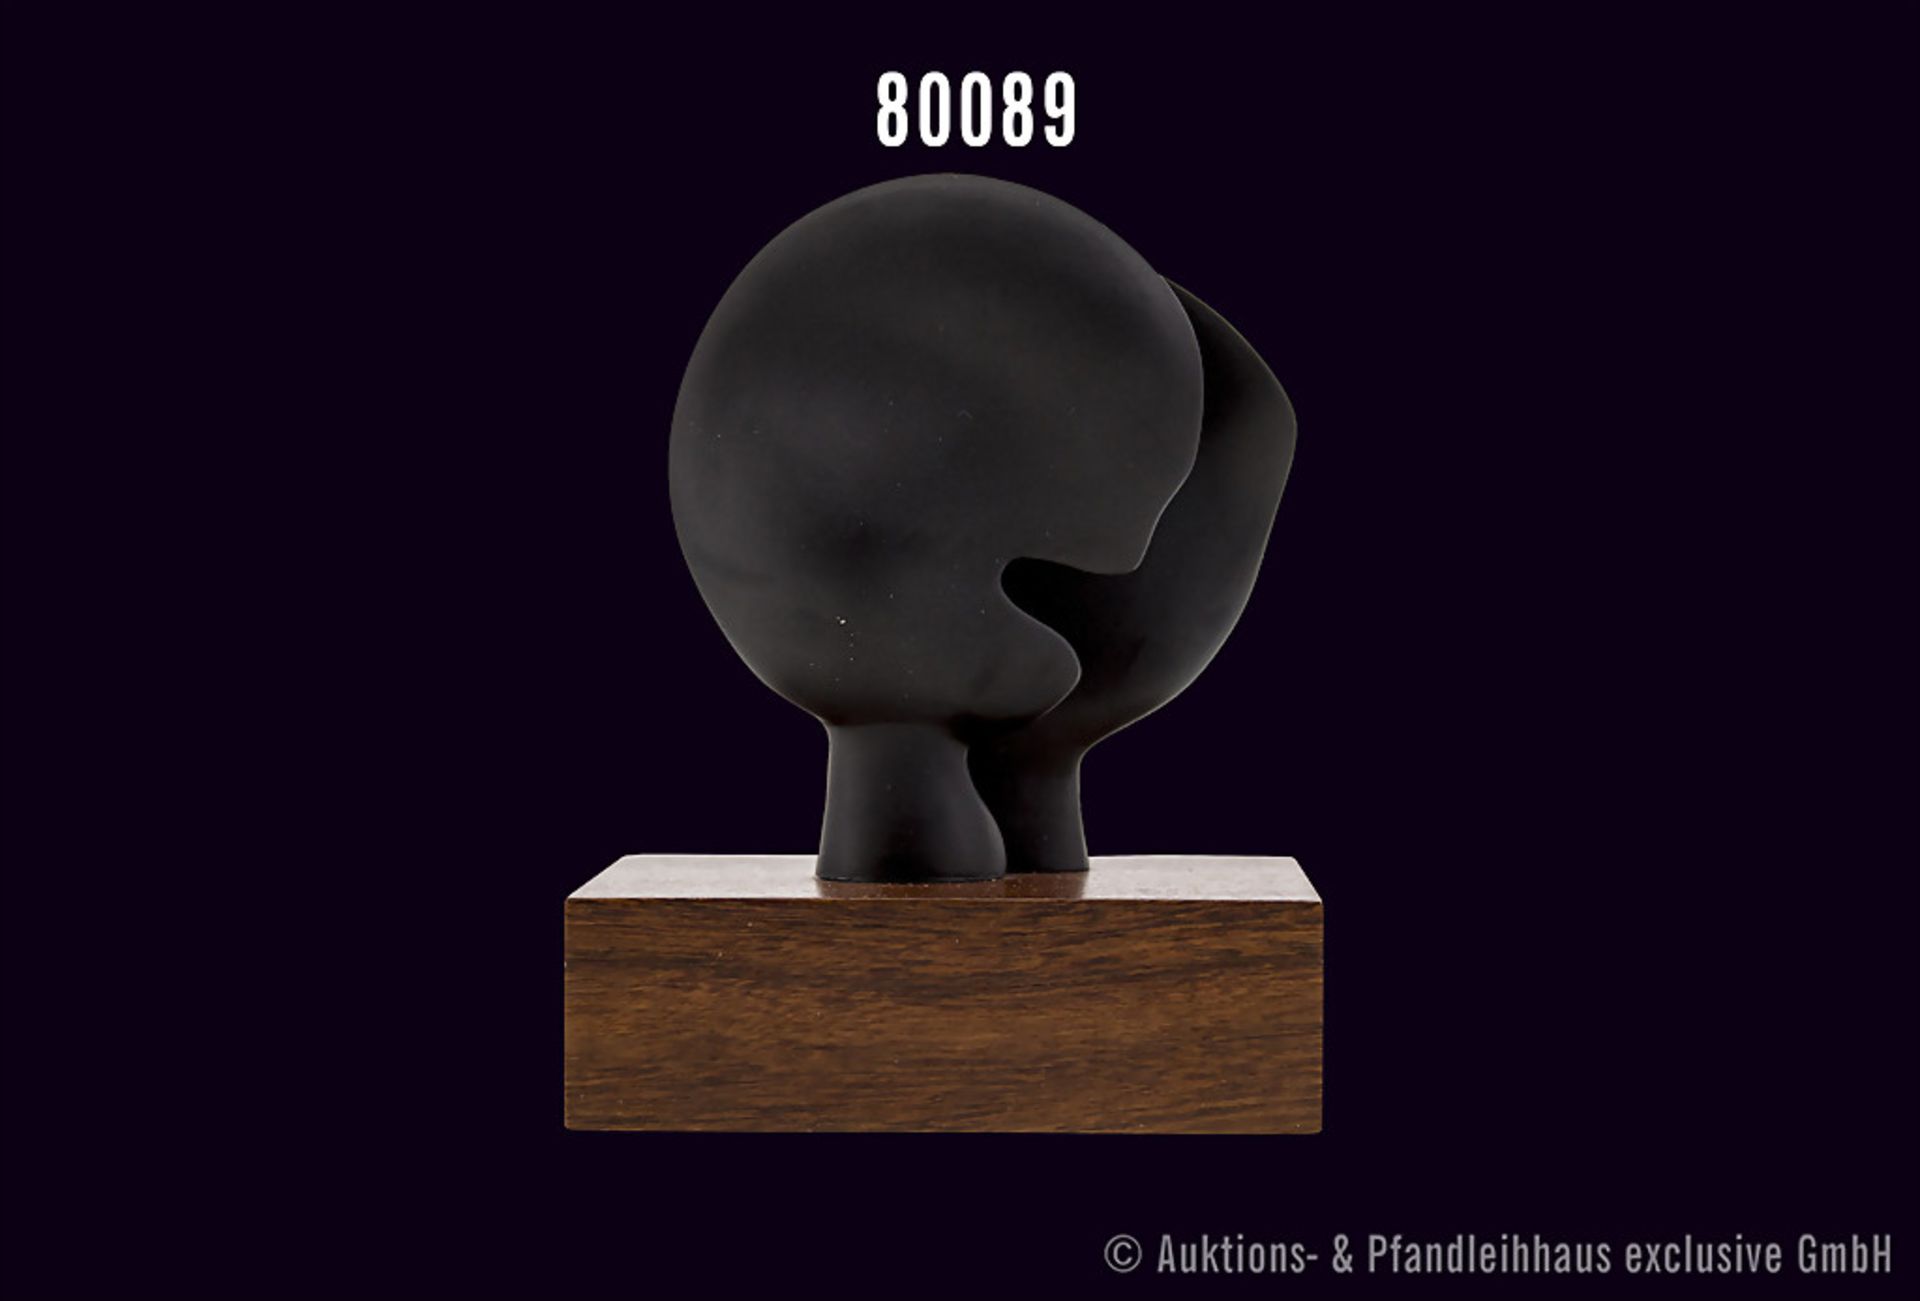 Rosenthal Porzellan, Skulptur von Henry Moore, Titel "Moonhead", schwarzes Porzellan auf Holzsockel, - Bild 2 aus 2